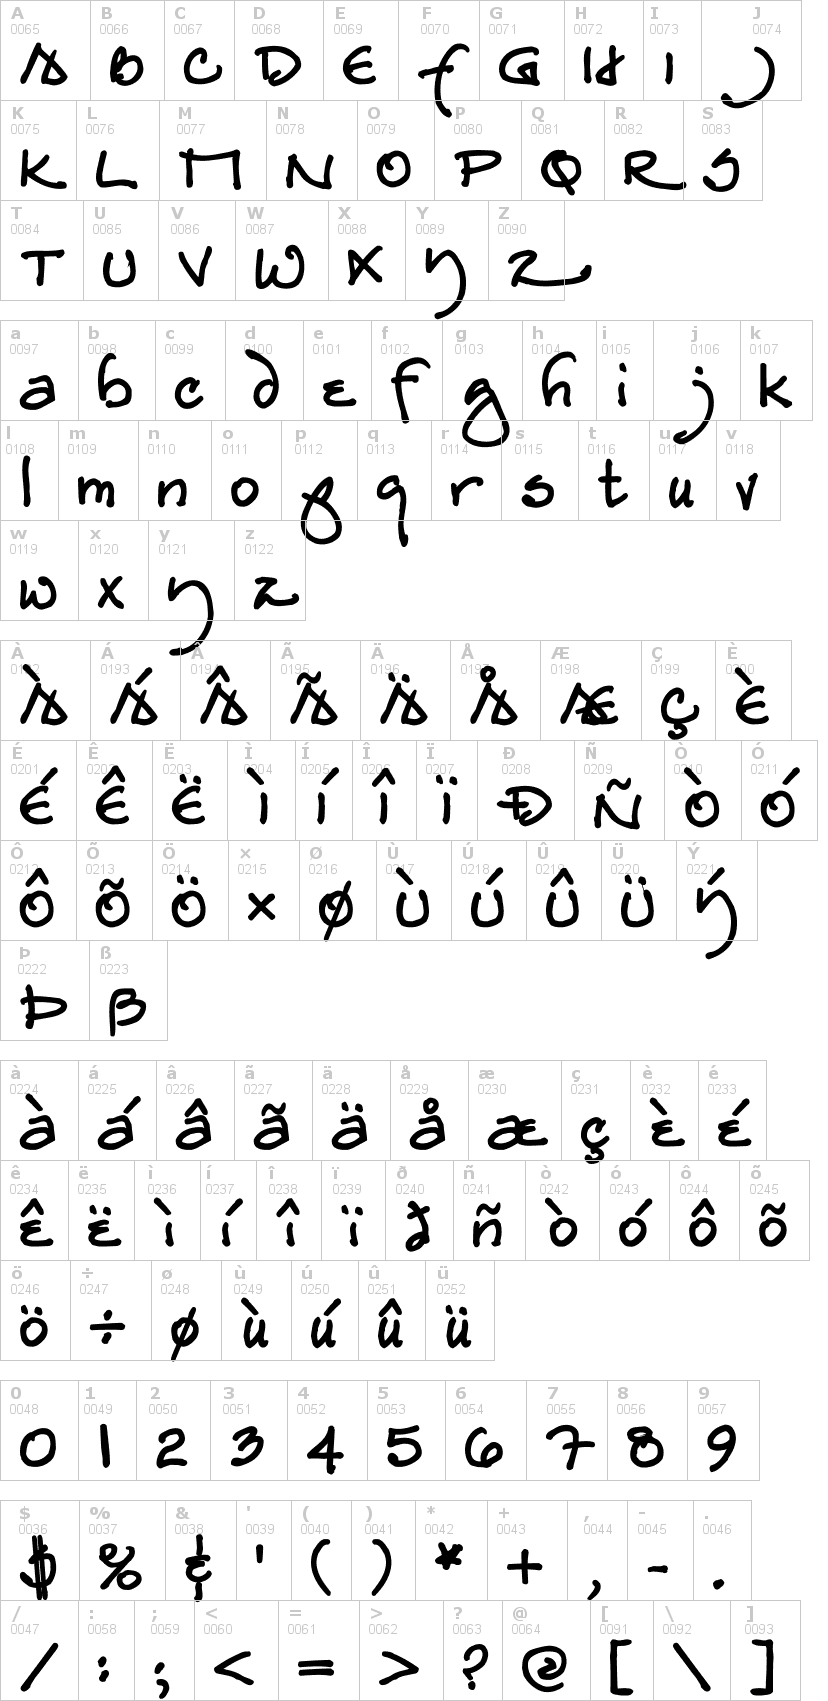 Lettere dell'alfabeto del font redstar con le quali è possibile realizzare adesivi prespaziati